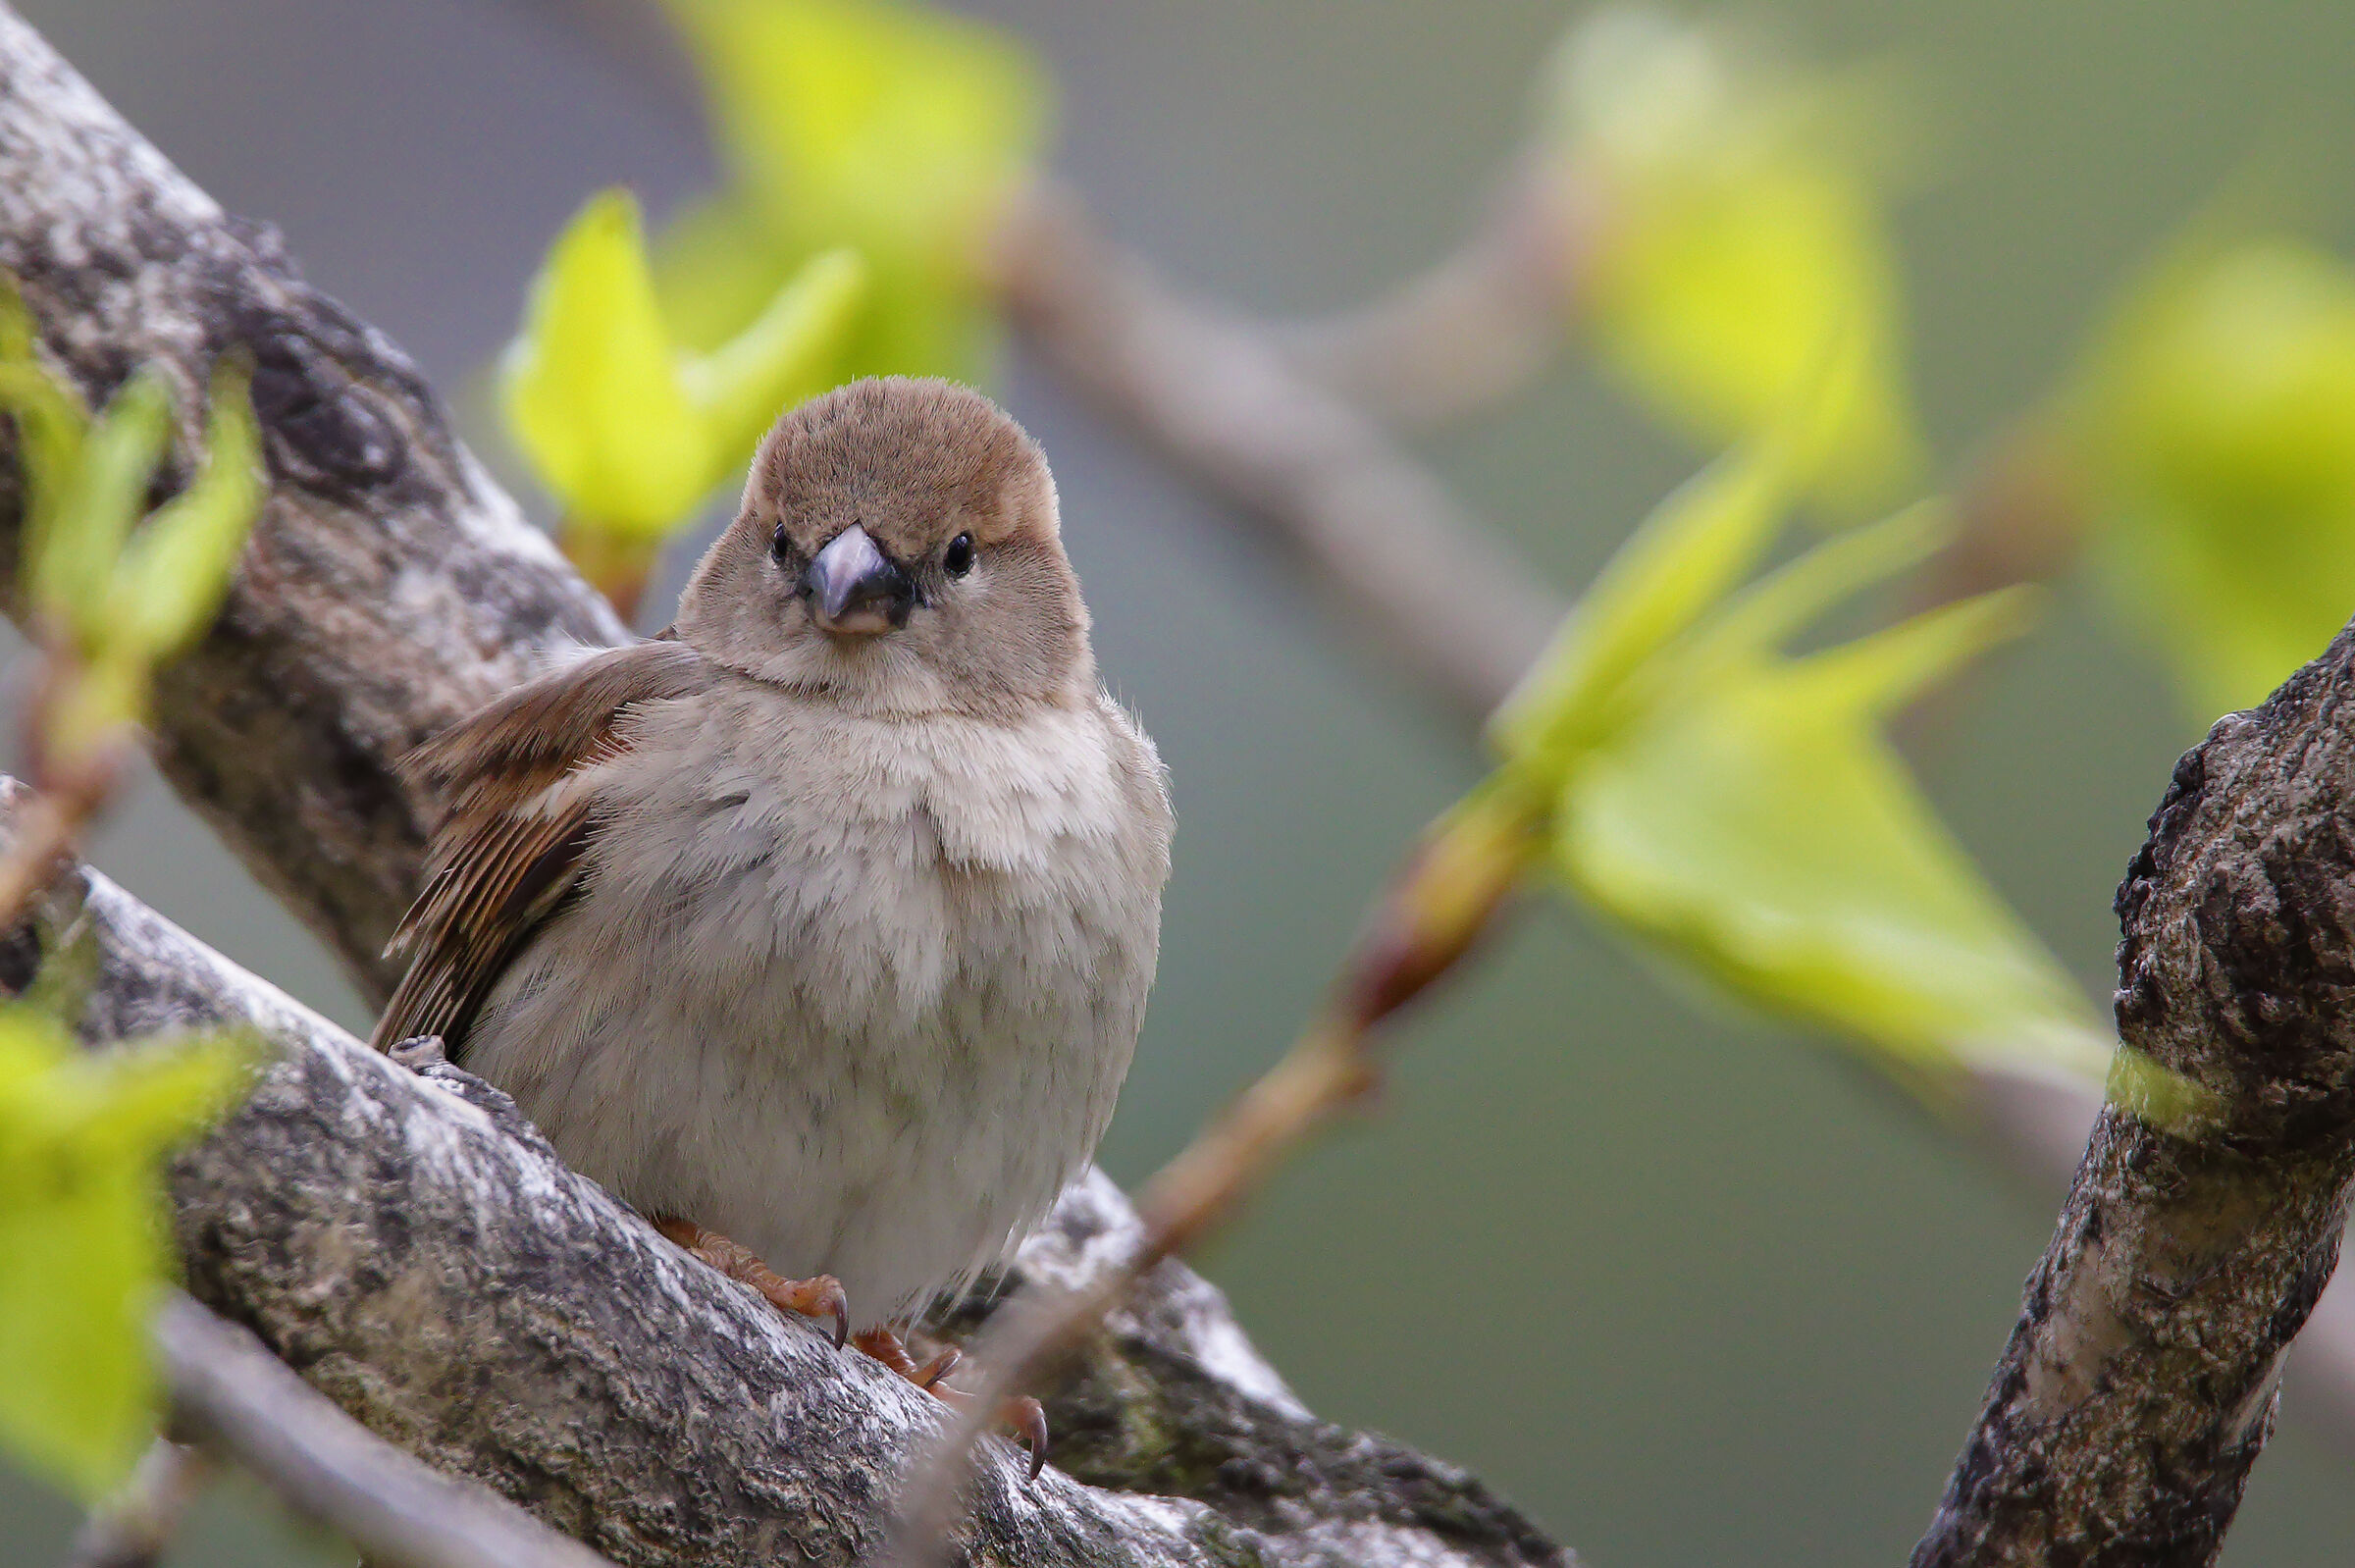 a simple sparrow...